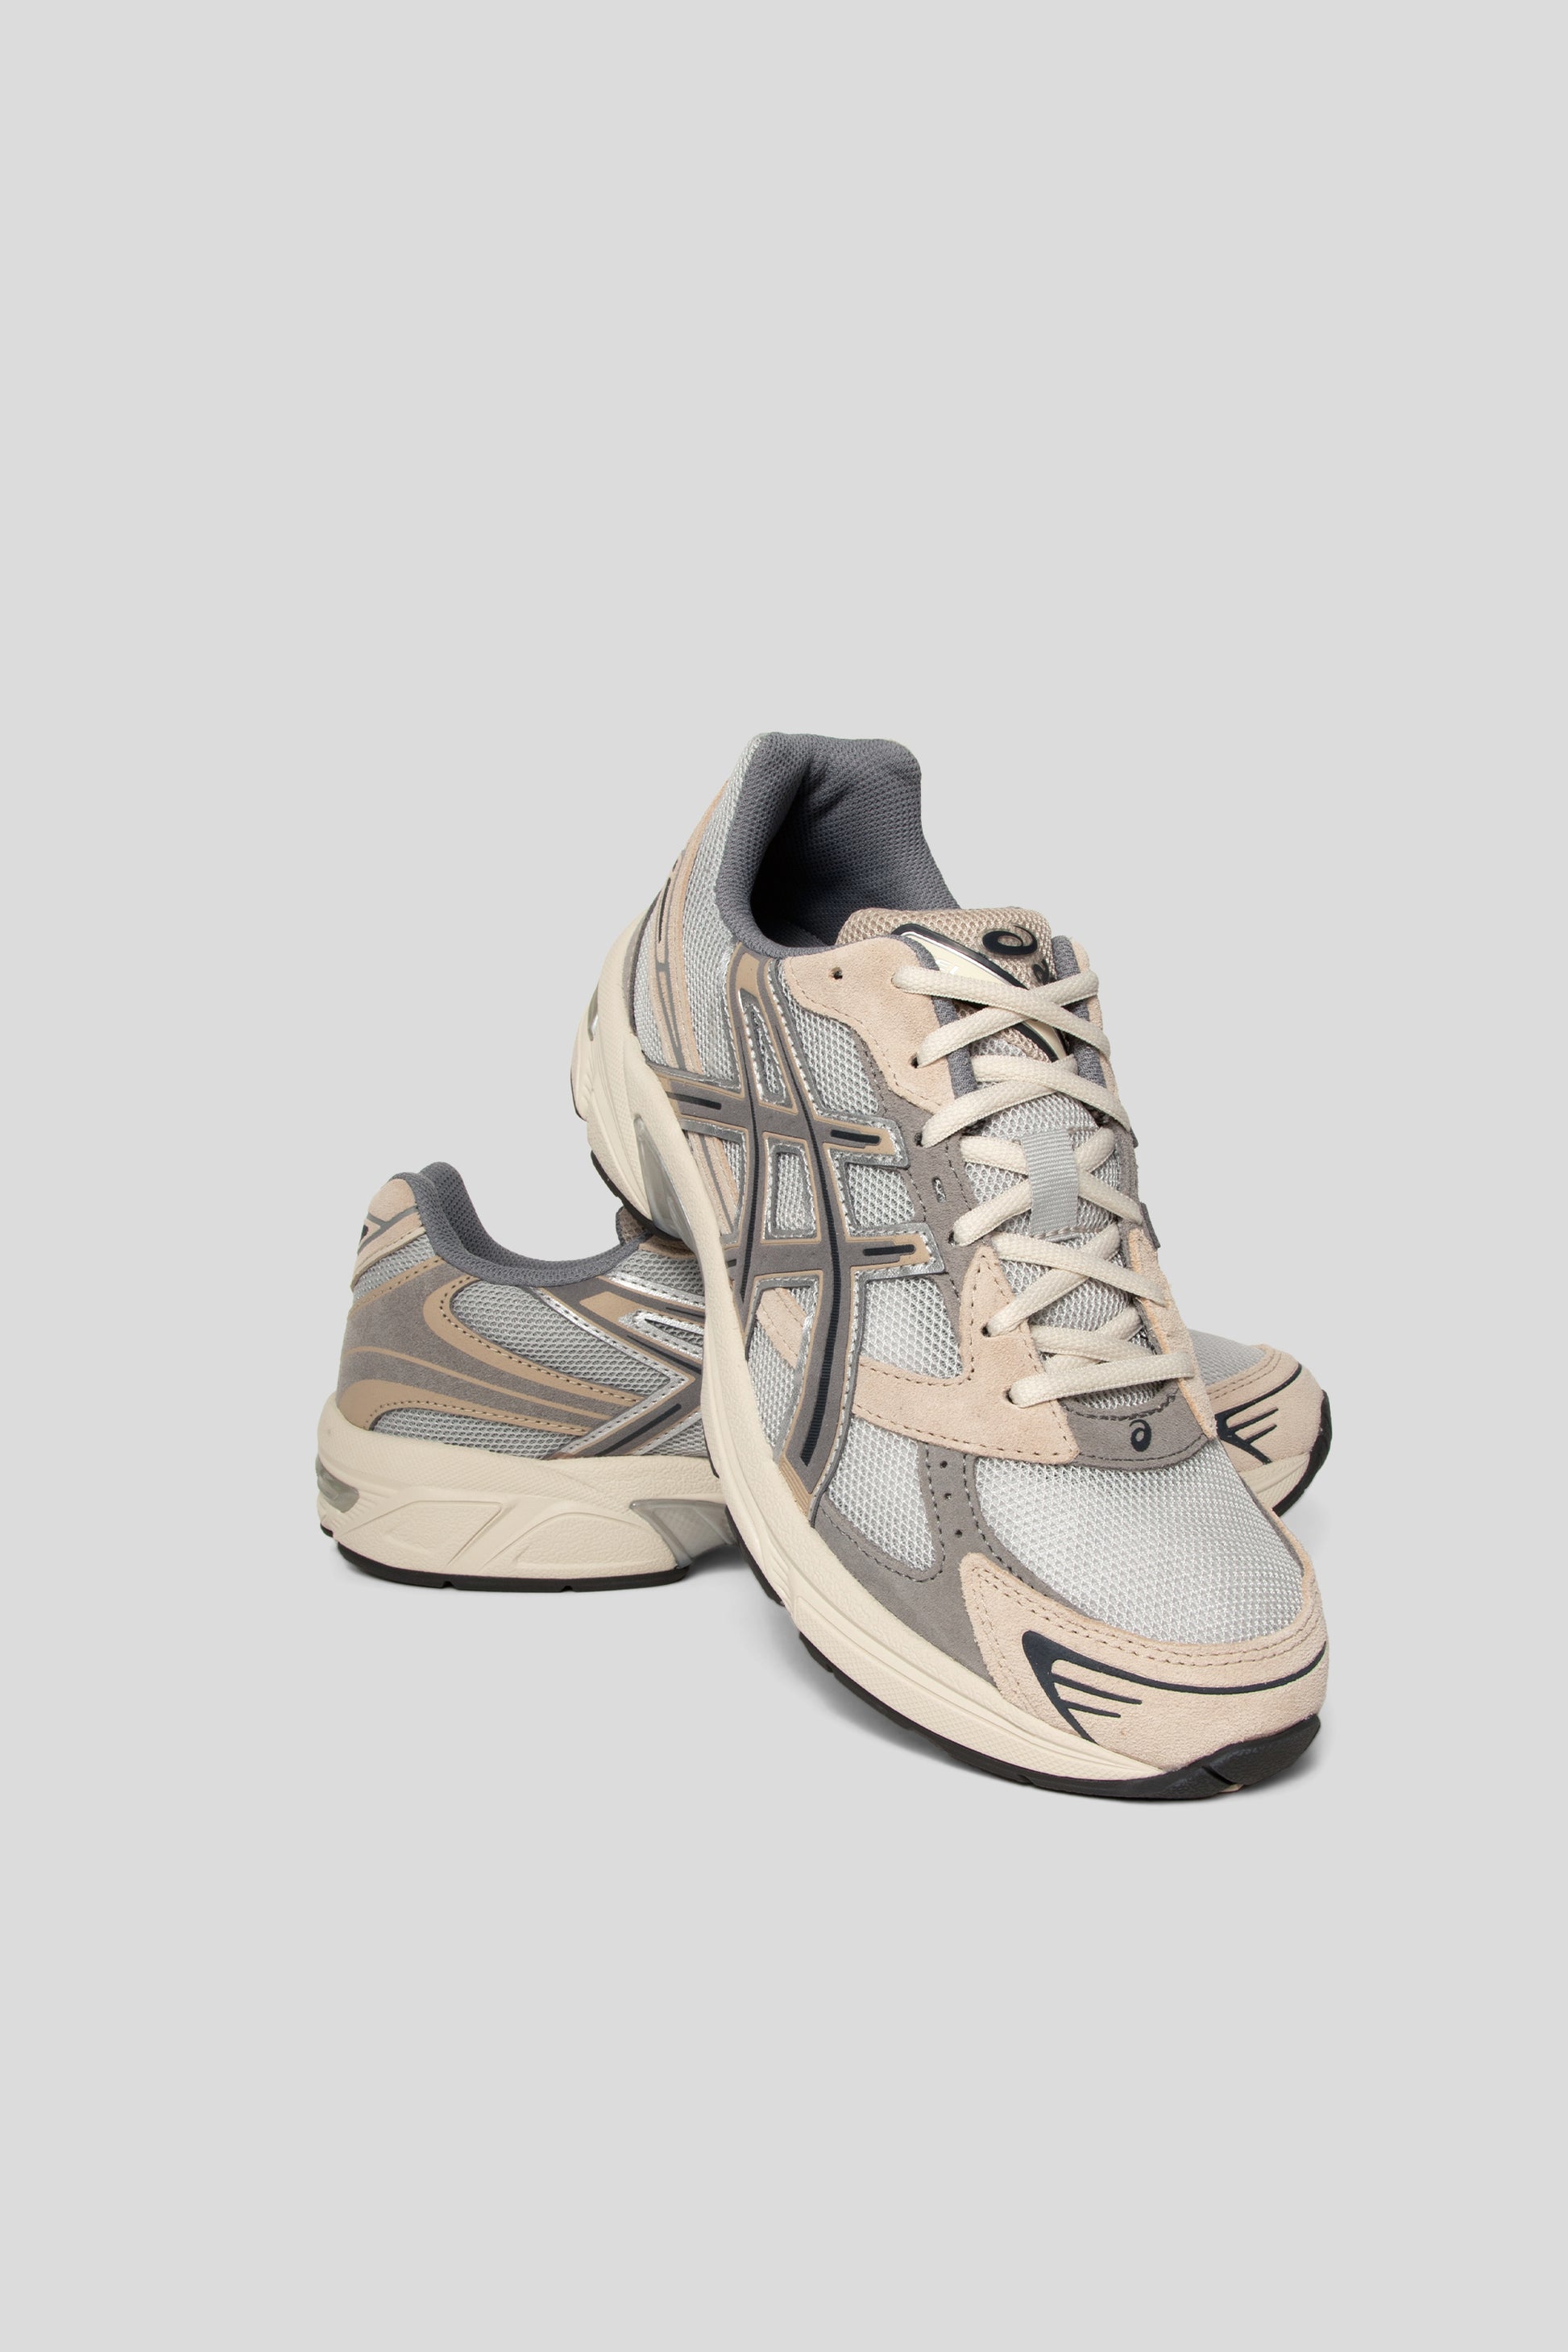 Asics Gel-1130 Shoe in Oyster Grey / Clay Grey